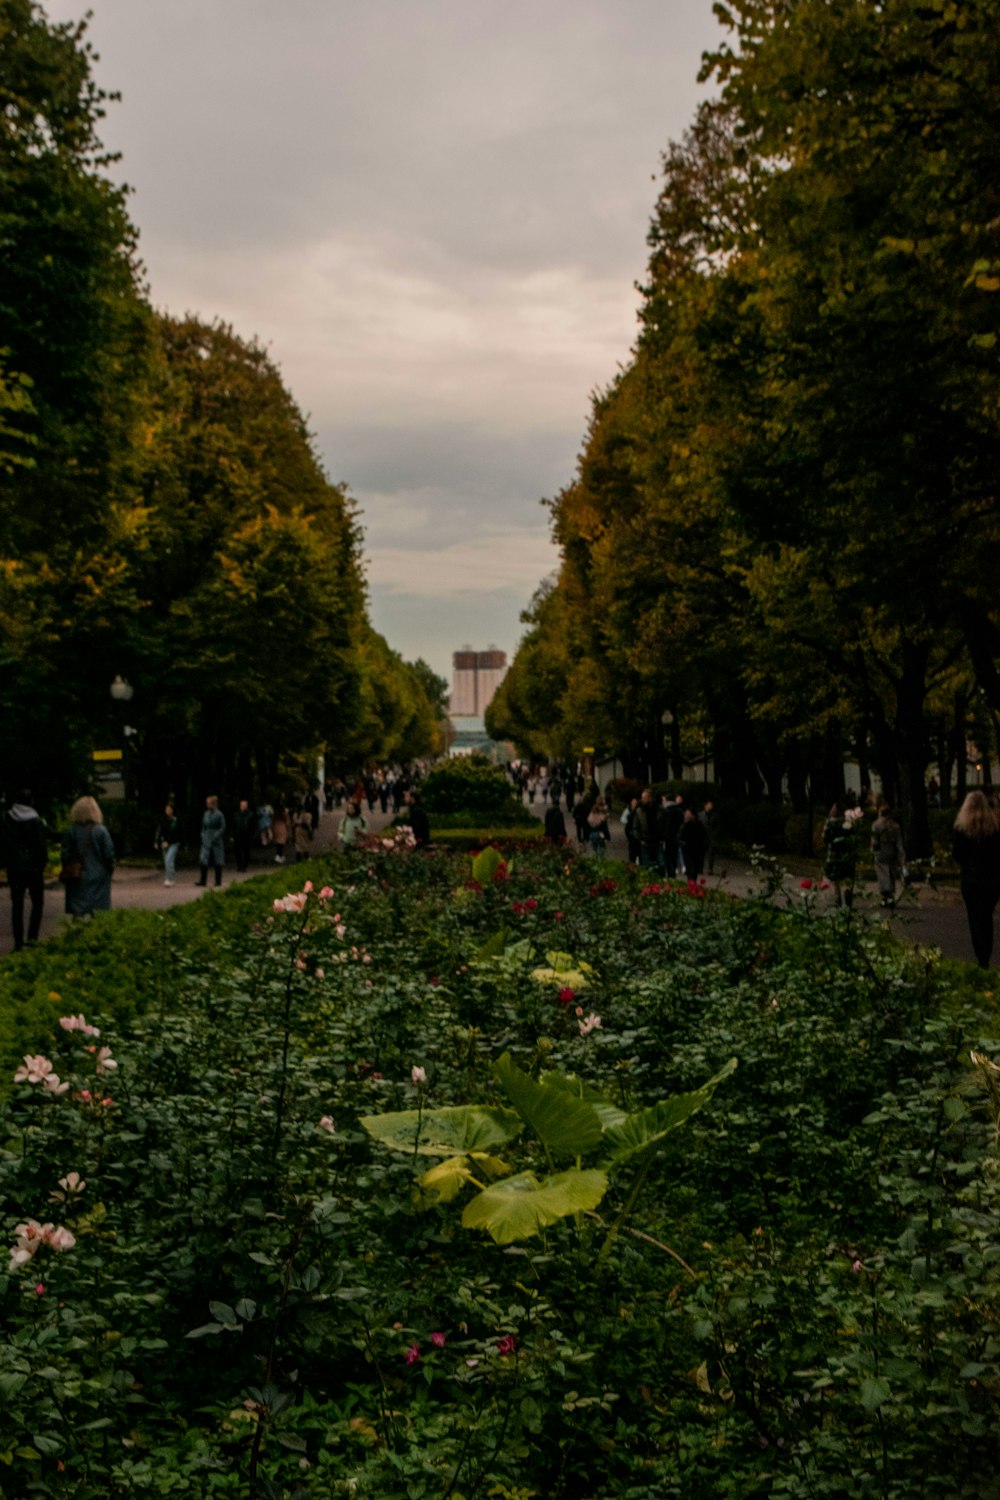 Un grupo de personas caminando en un parque con flores y árboles